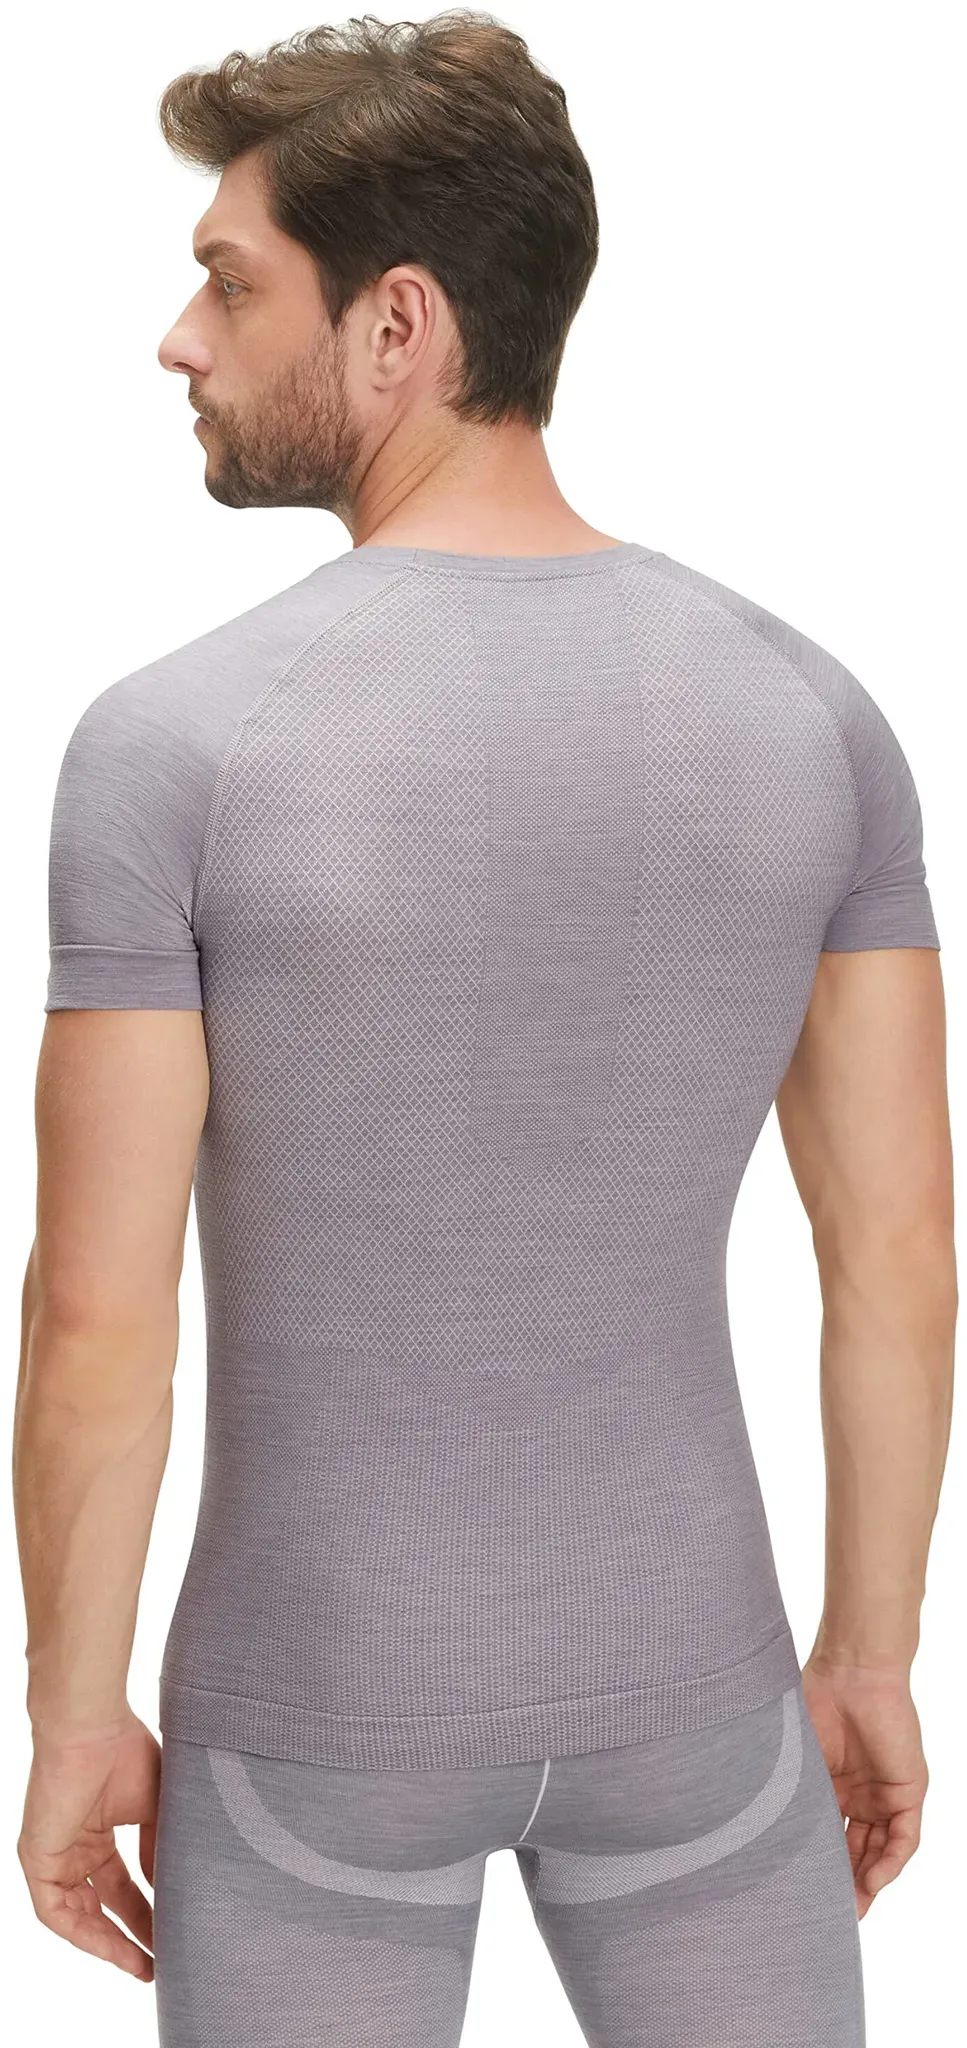 FALKE Herren Baselayer-Shirt Wool-Tech Light Round Neck M S/S SH Wolle Schnelltrocknend 1 Stück, Grau (Grey-Heather 3757), L